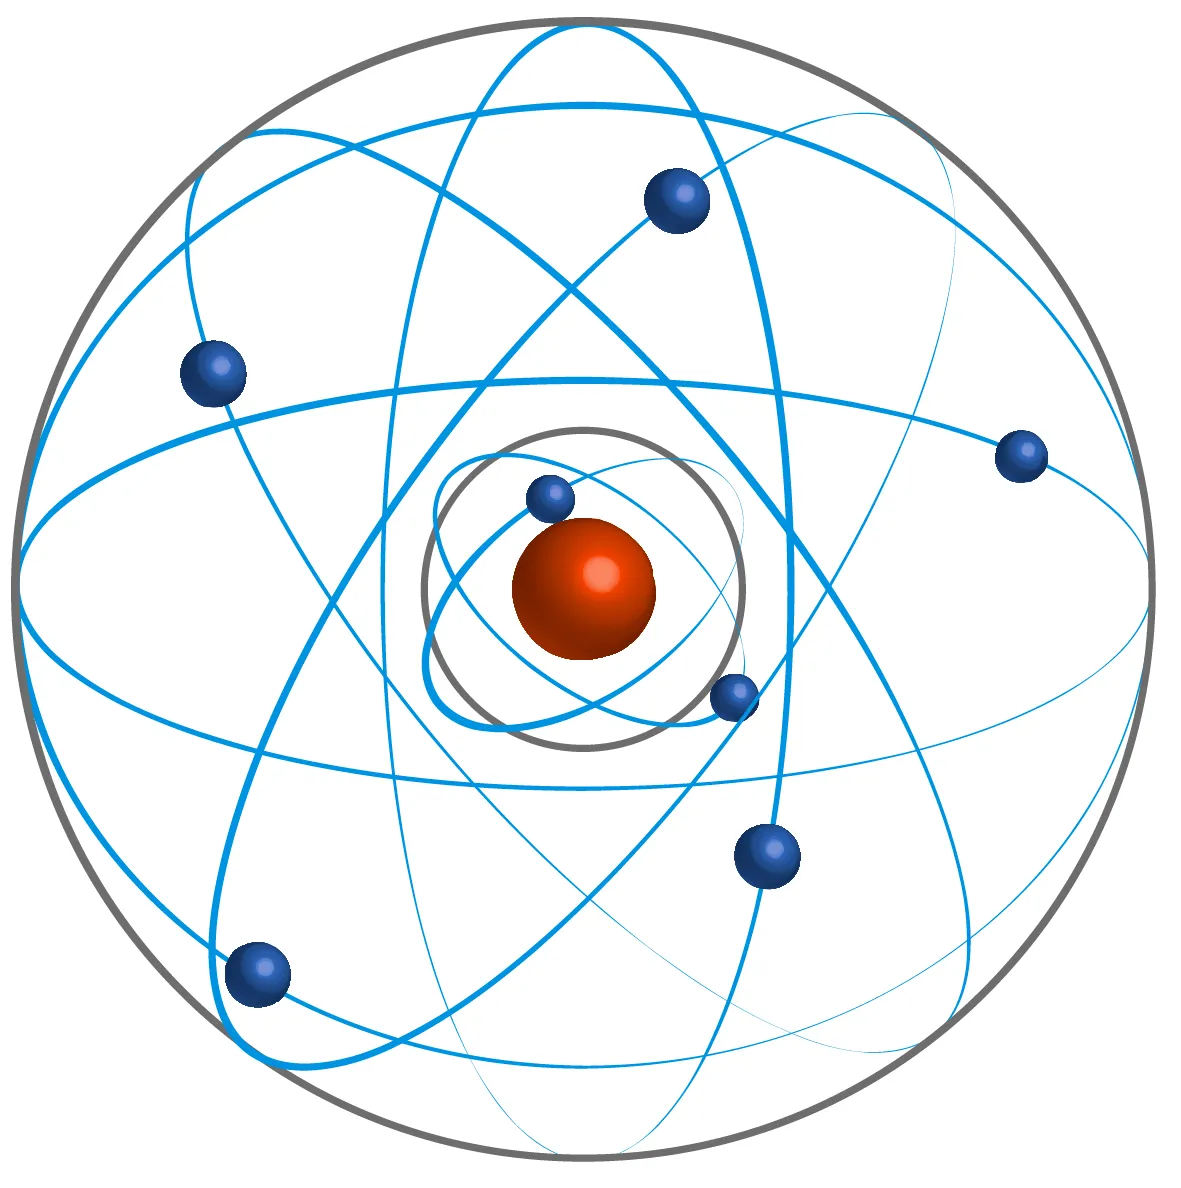 Noyau positif avec des électrons qui orbitent autour. Les orbites sont à des distances bien définies et on les appelle couches. Entre les deux, du vide.